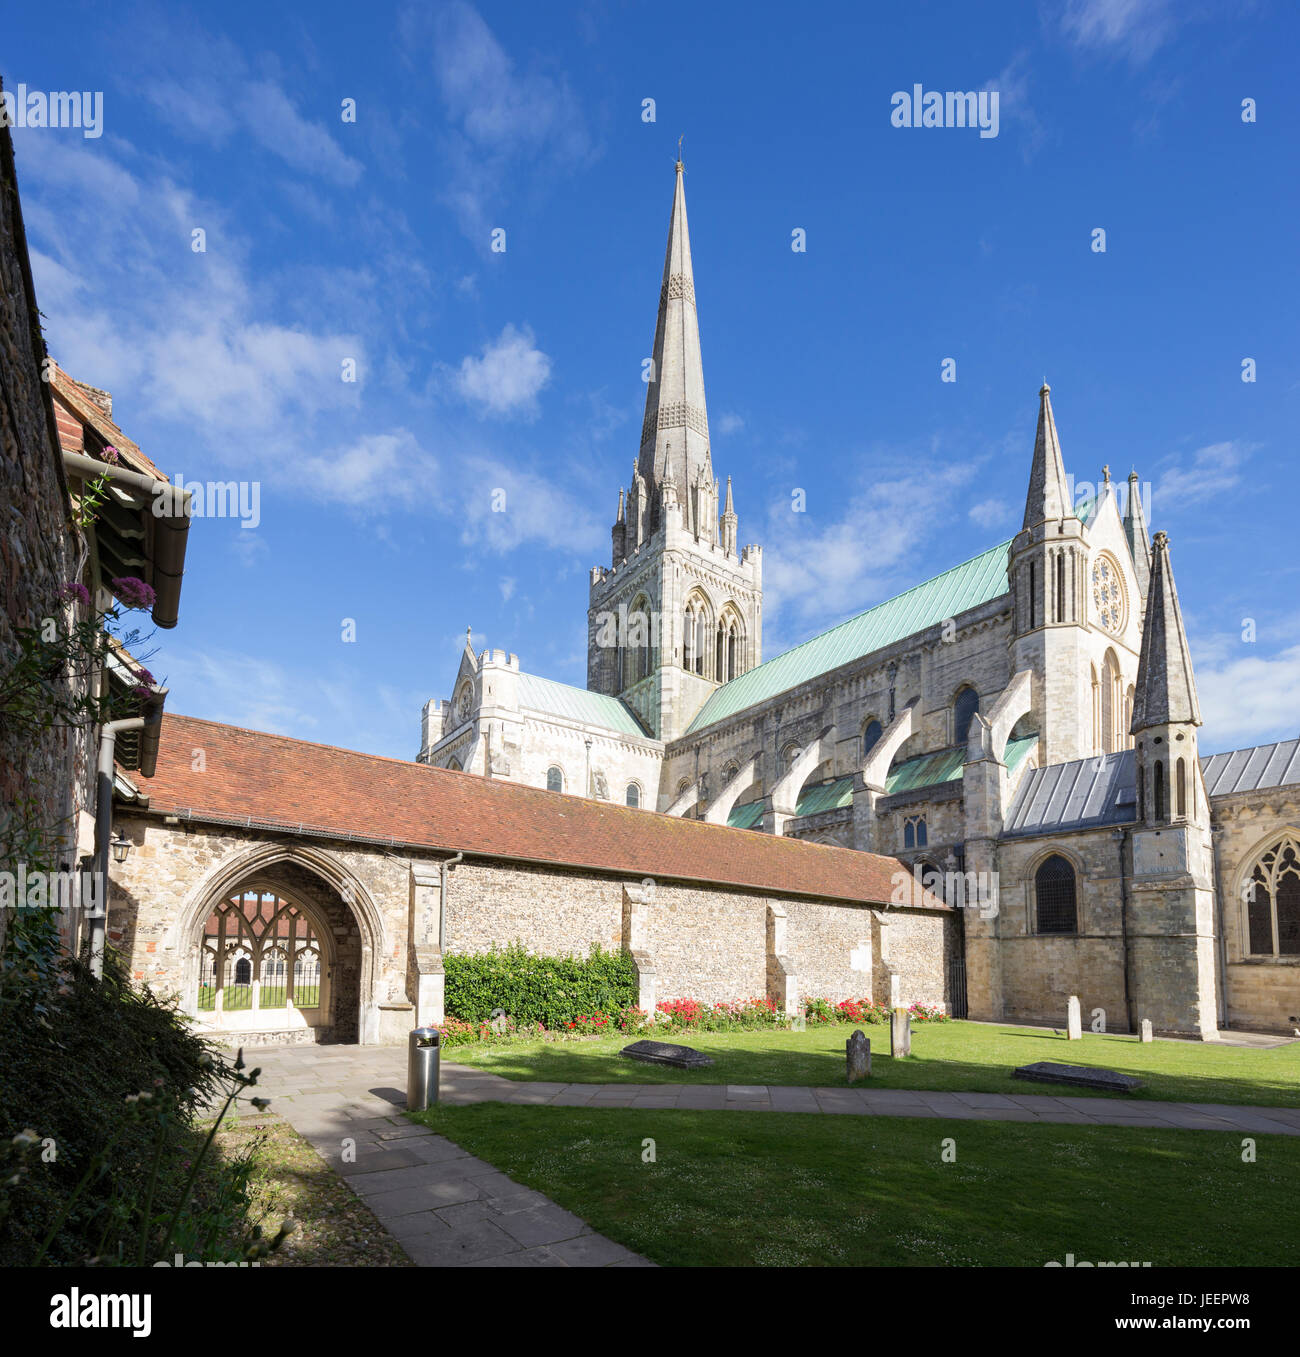 La Cathédrale de Chichester, West Sussex, England, UK Banque D'Images